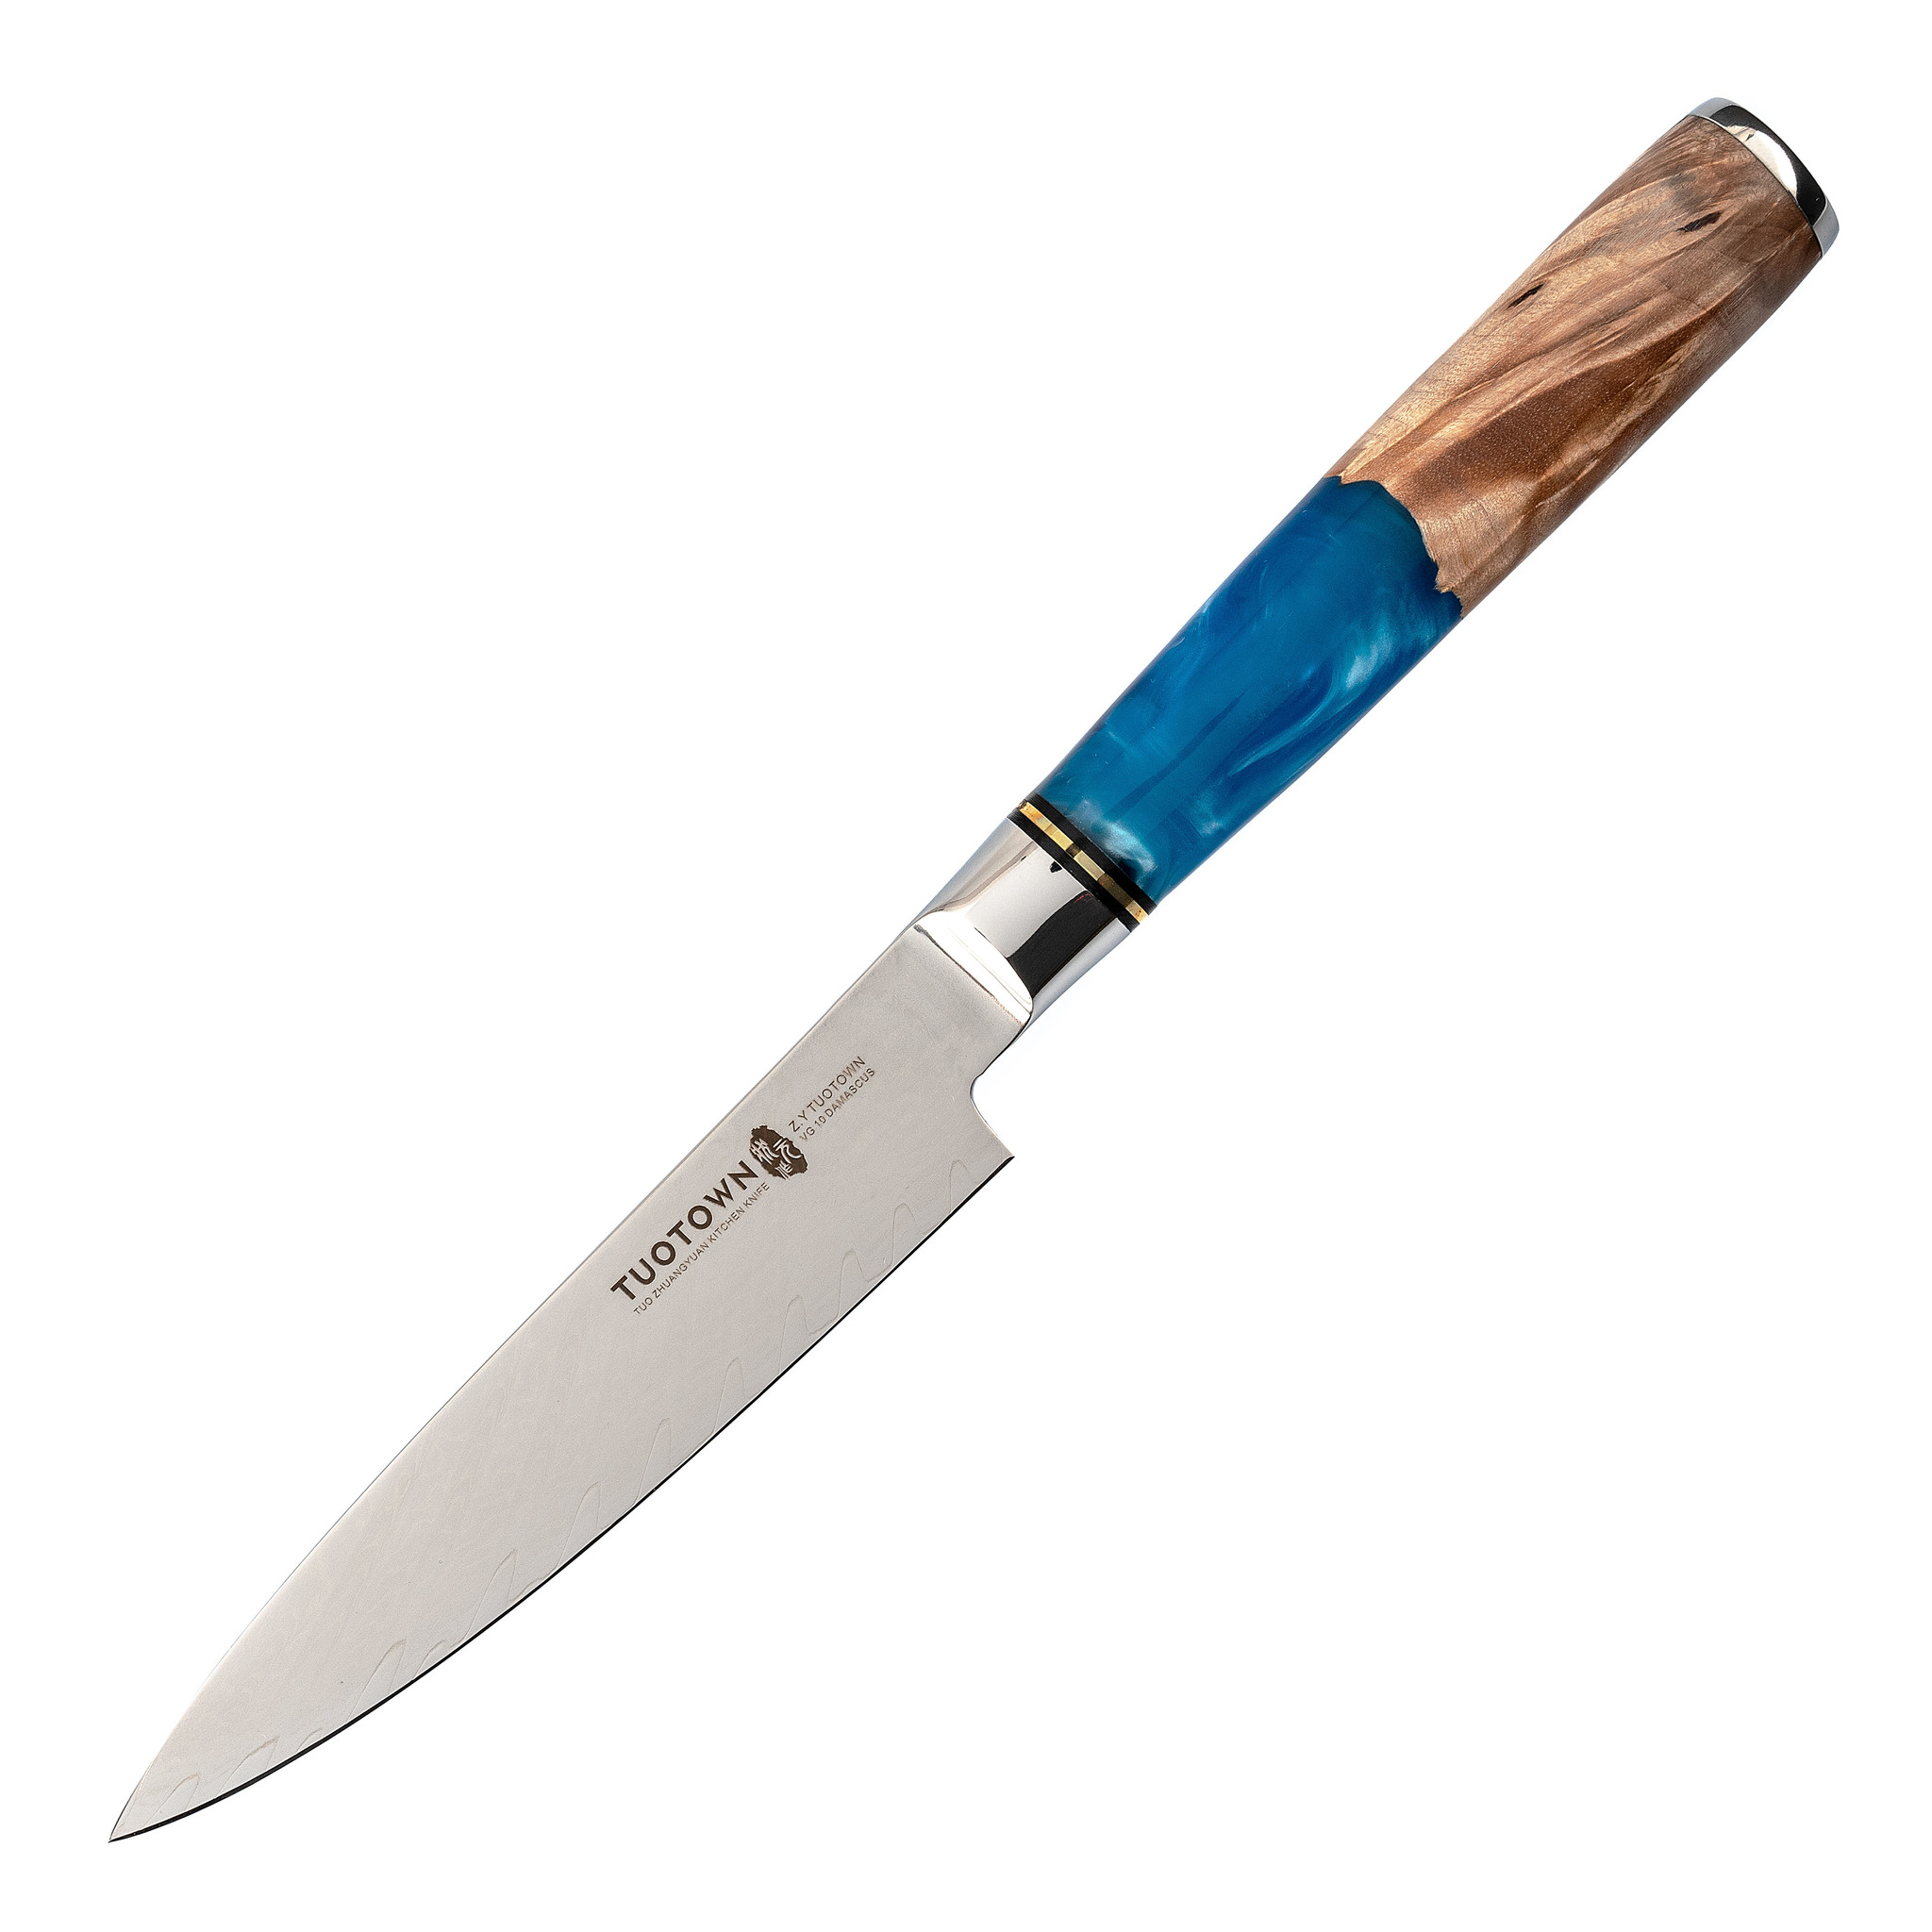 Кухонный универсальный нож Tuotown TWB-D3, сталь VG-10, рукоять дерево/эпоксидка